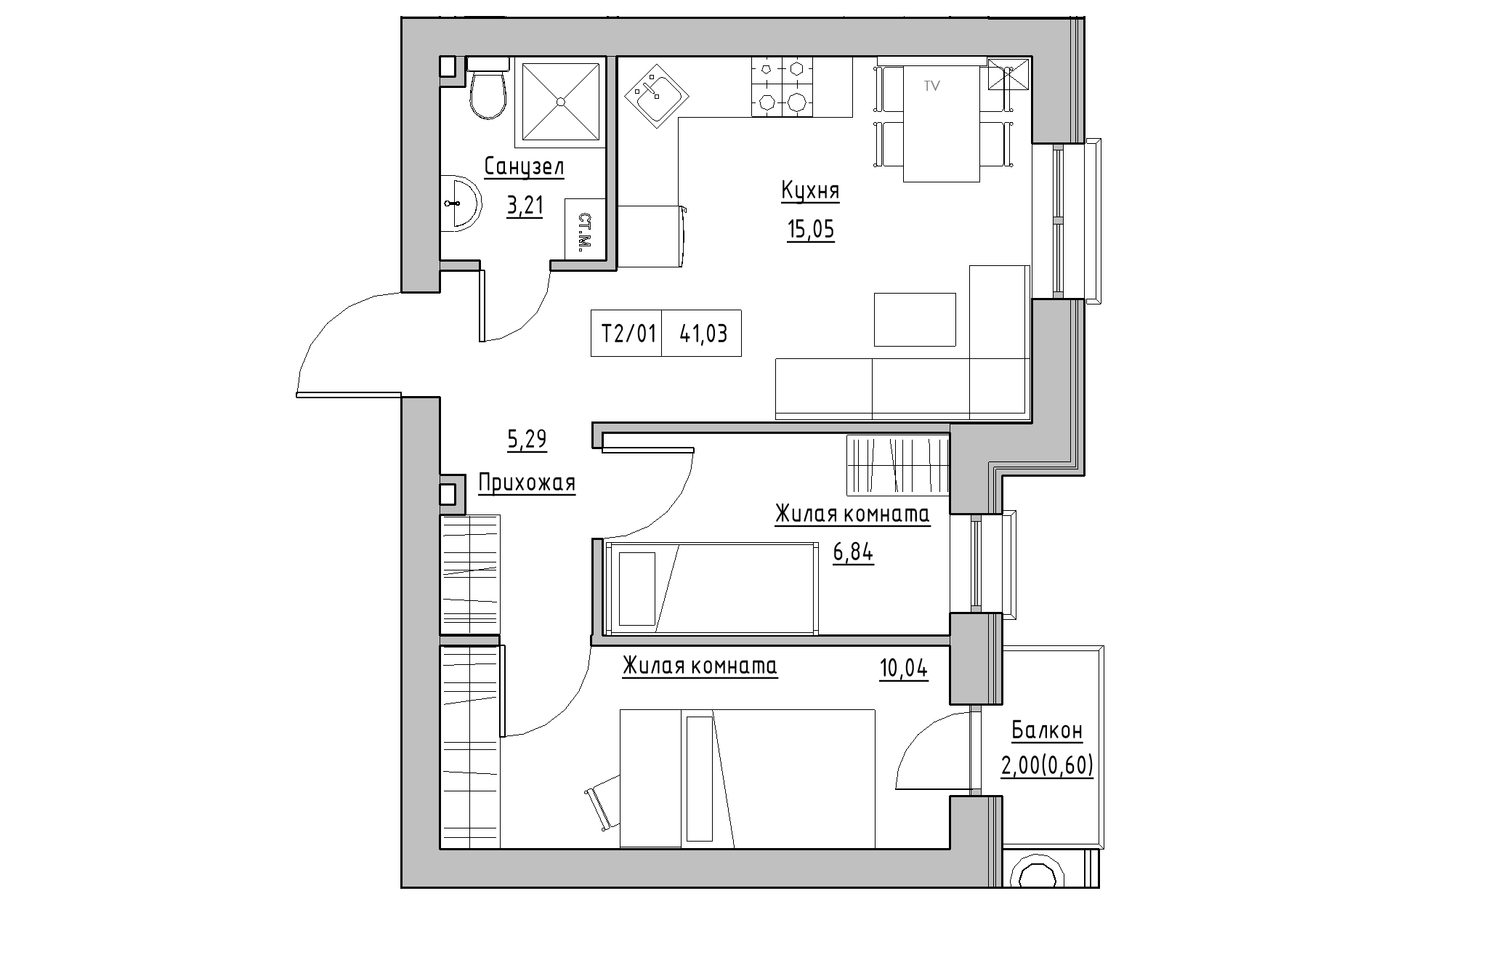 Планування 2-к квартира площею 41.03м2, KS-010-03/0010.